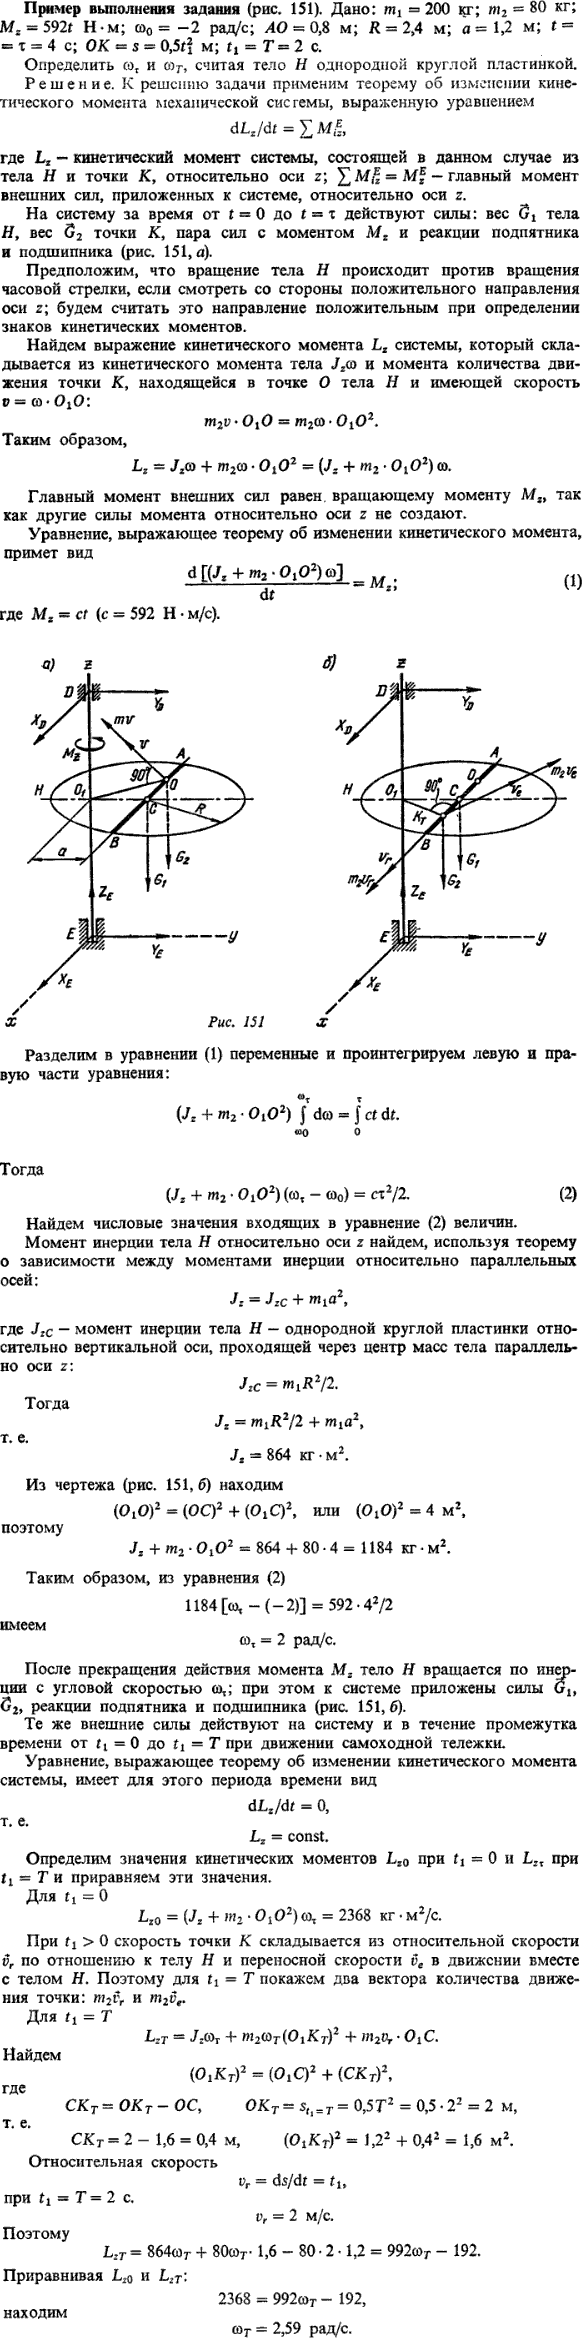 Пример решения Д9 Яблонский. m1 = 200 кг; m2 = 80 кг; Mz= 592t Н · м;ω0 = -2 рад/с; AO= 0,8 м; R = 2,4 м; a = 1,2..., Задача 14835, Теоретическая механика